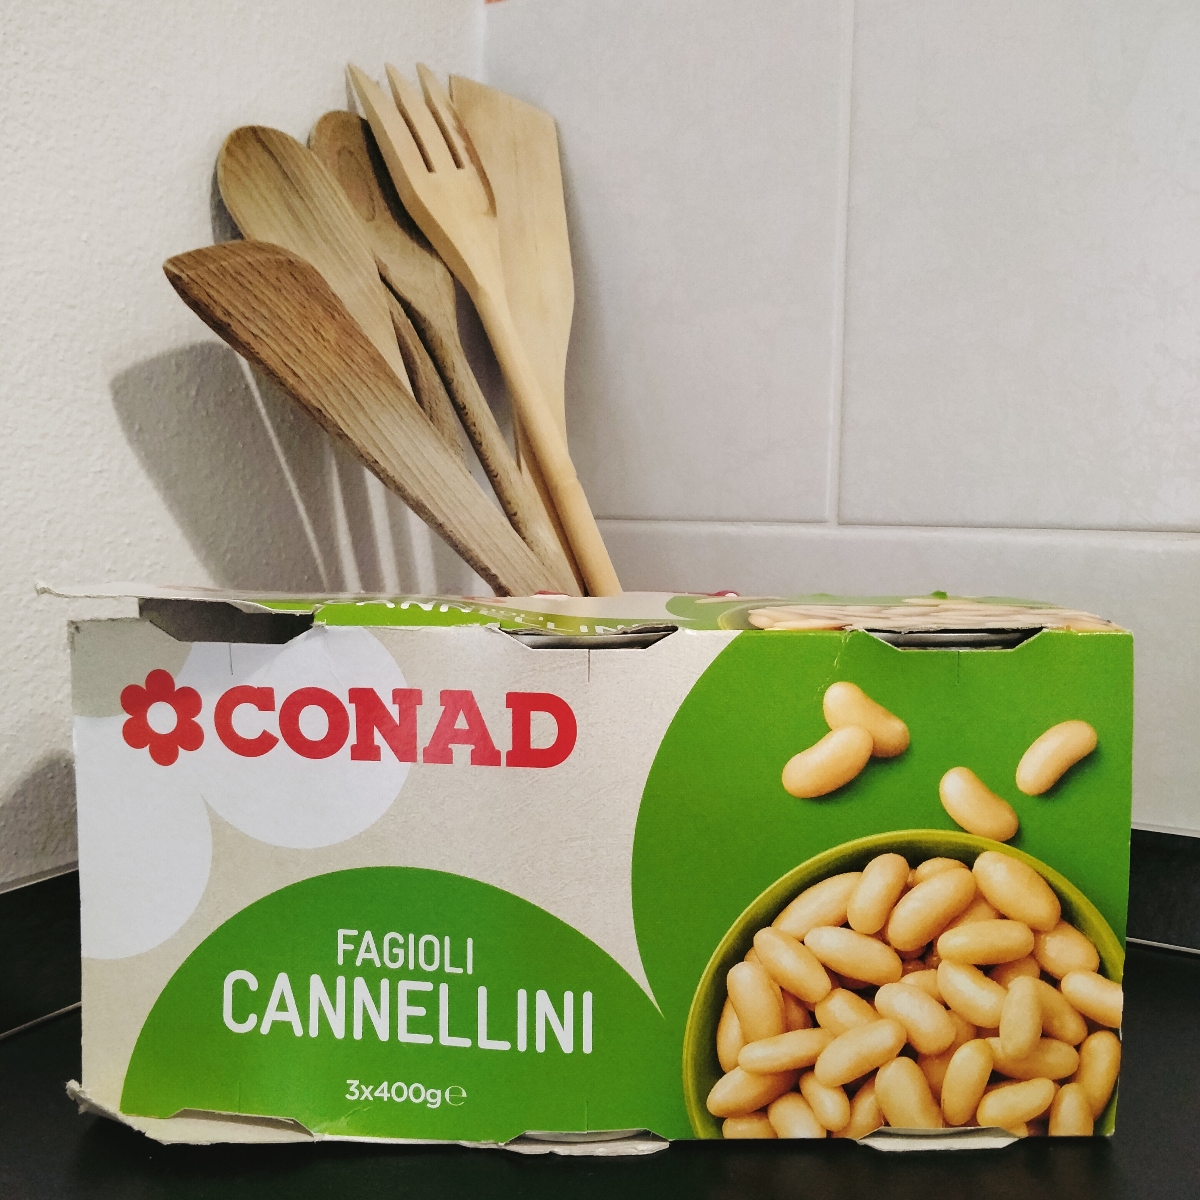 Conad Fagioli Cannellini Reviews